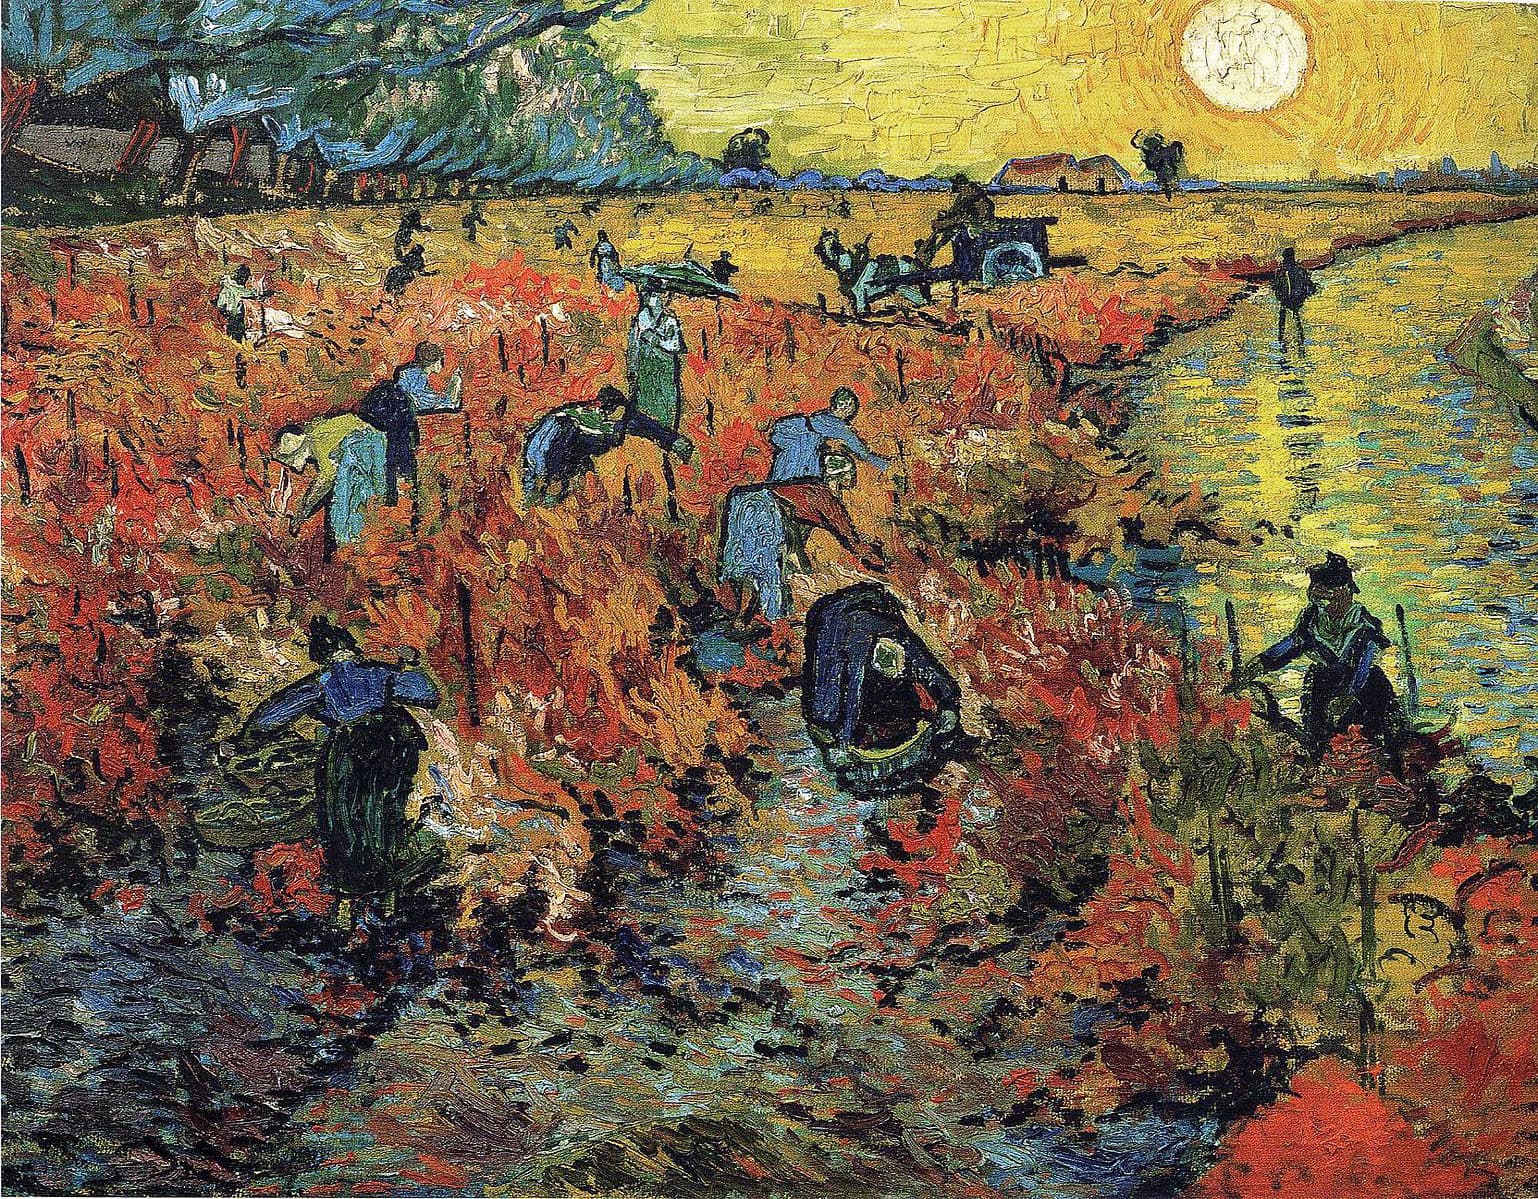 The Red Vineyard / Red Vineyard at Arles (Montmajour) by Vincent van Gogh